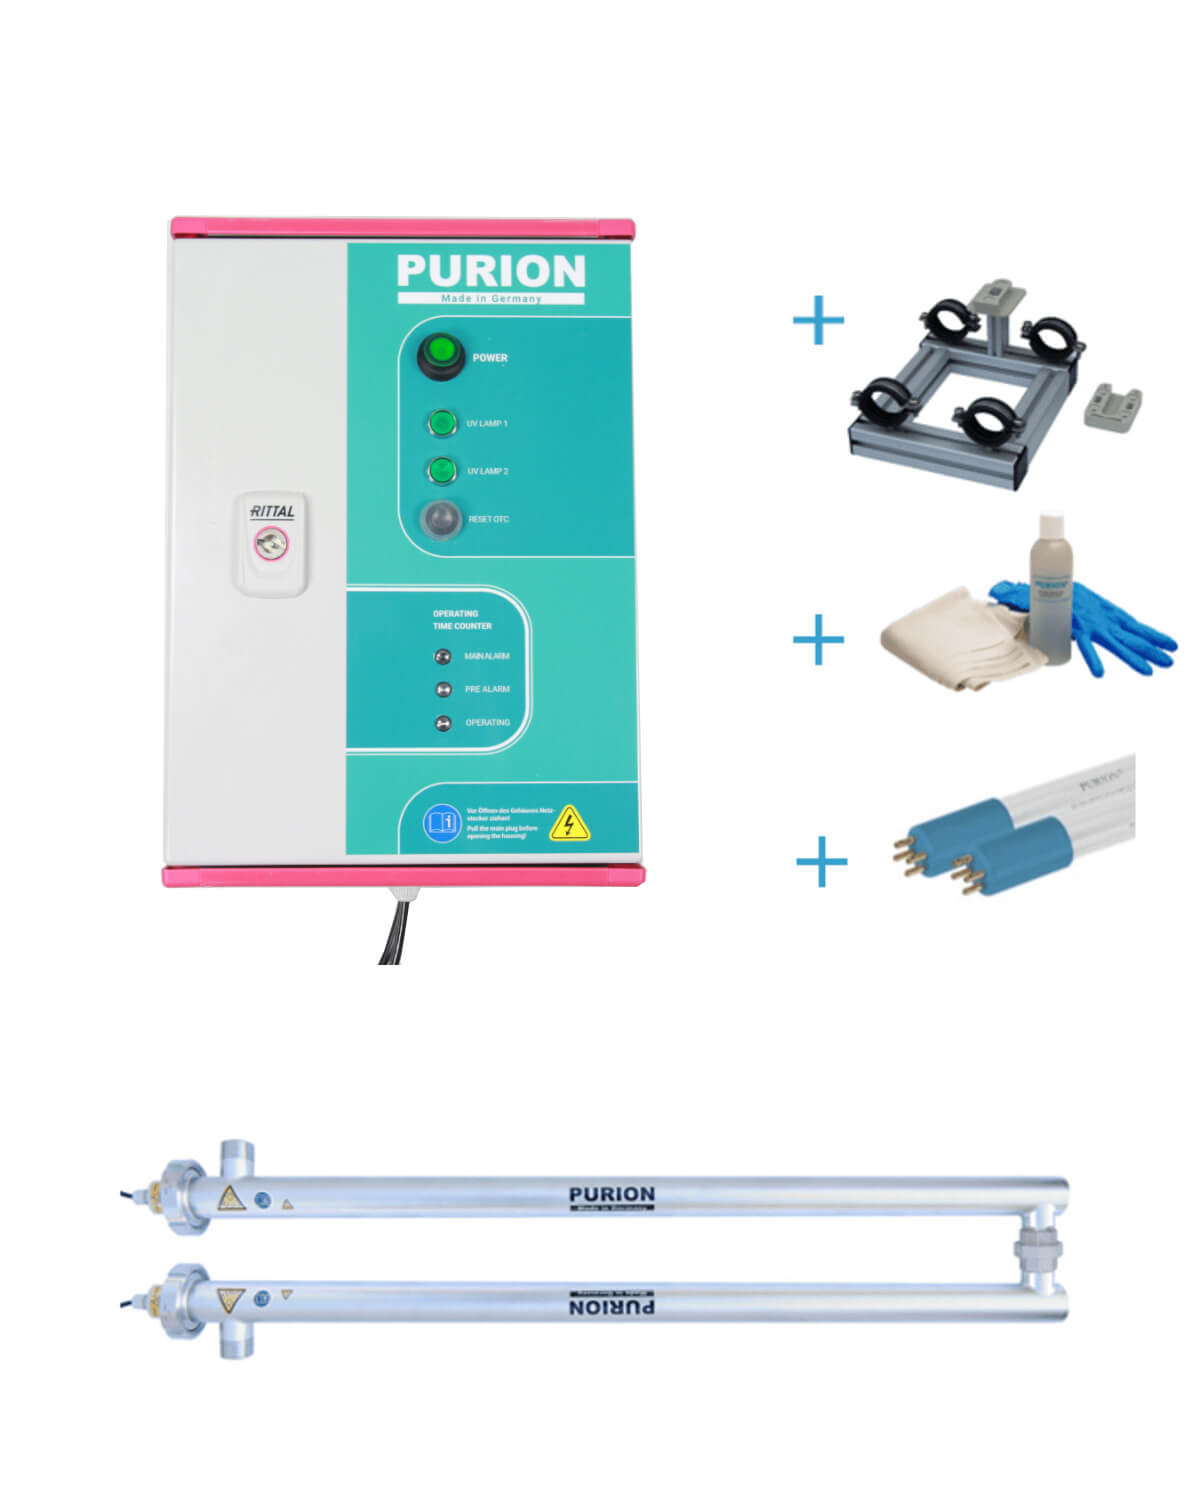 Das PURION 2500 36 W DUAL OTC Bundle der PURION GmbH ist eine Anlage, die Trinkwasser mittels UV-C-Desinfektion desinfiziert.